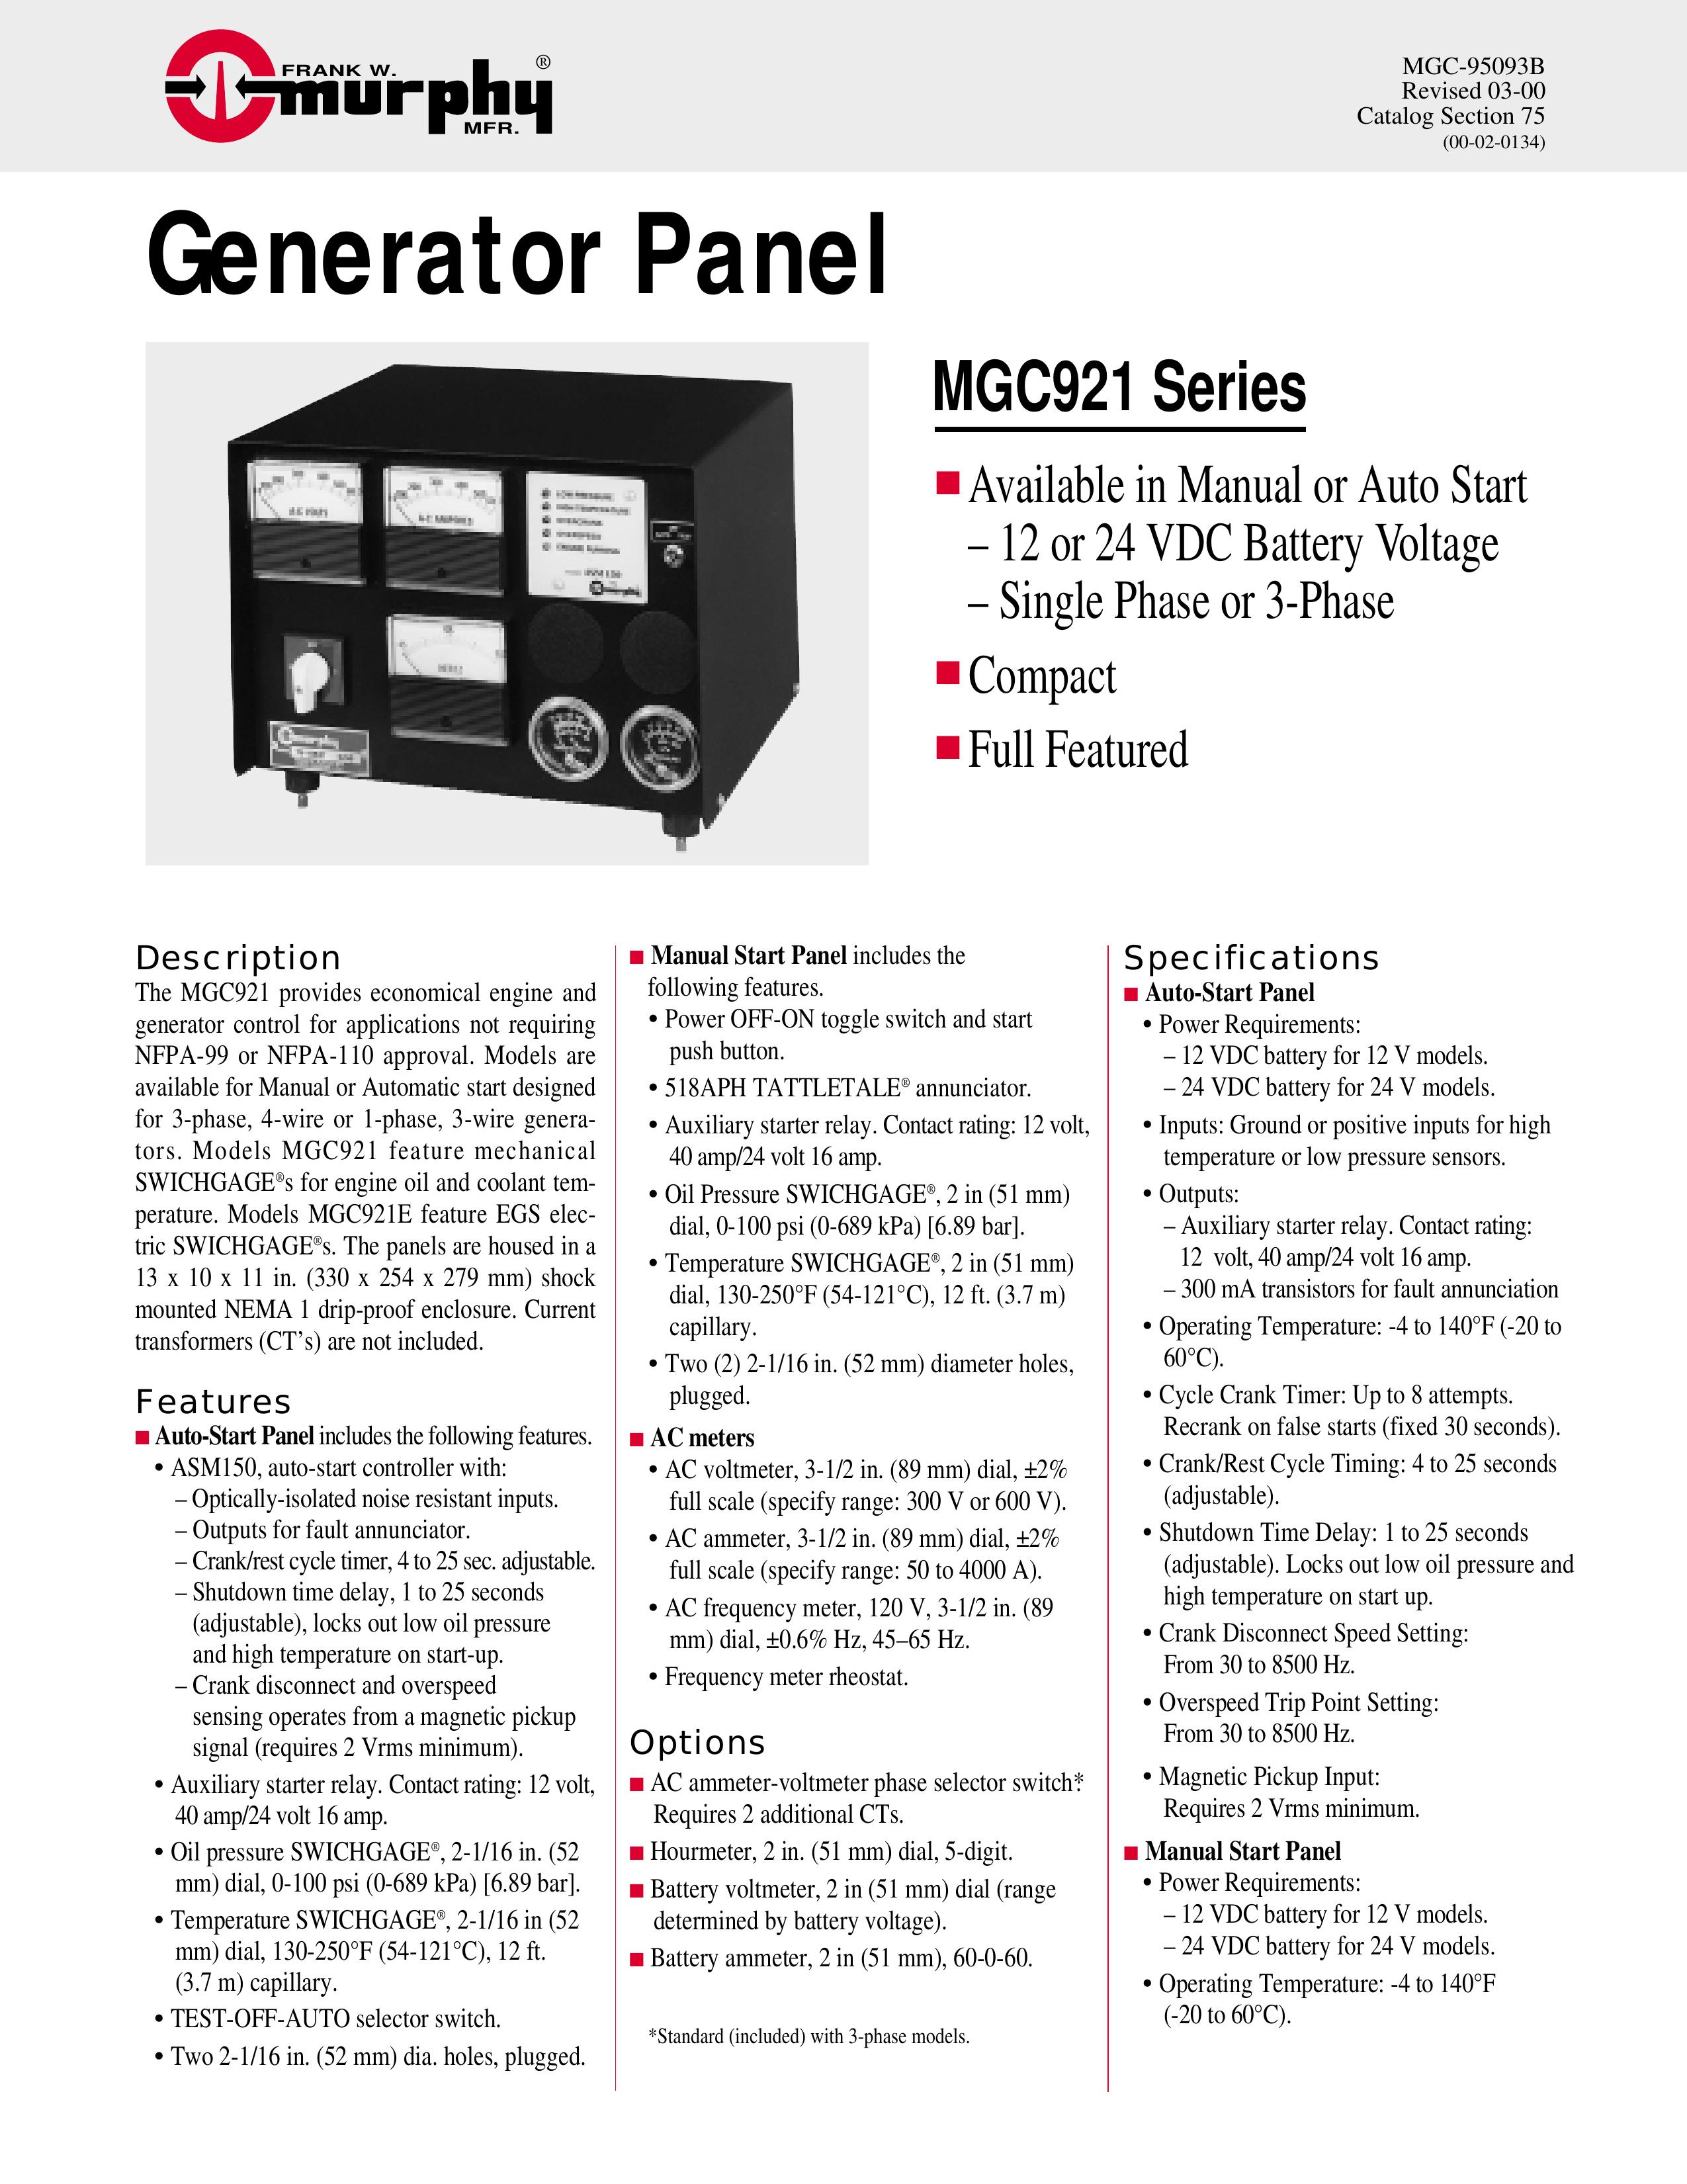 Murphy MGC921 Series Portable Generator User Manual